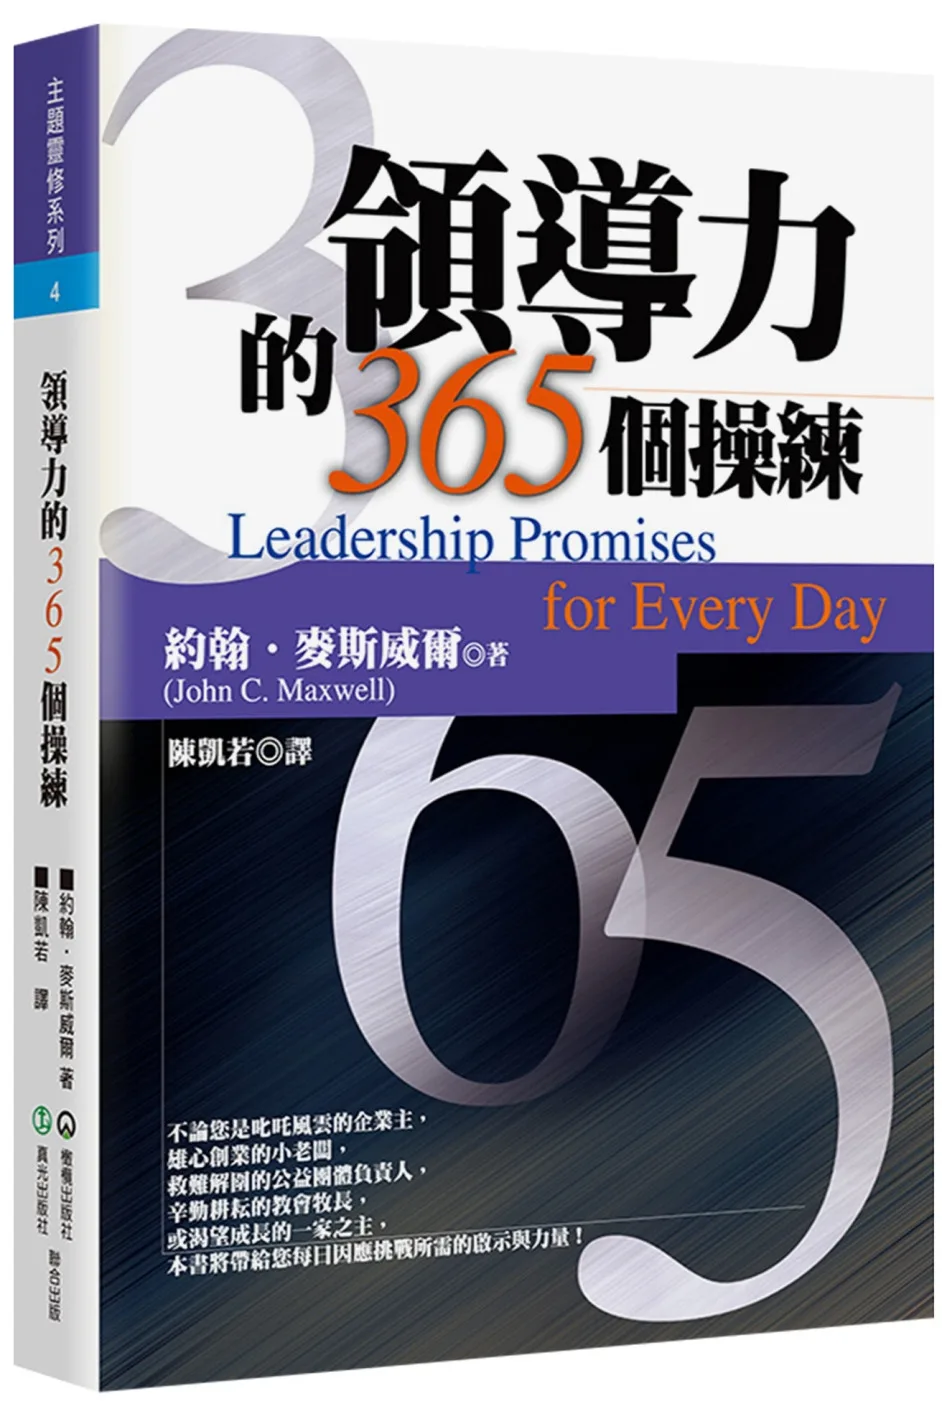 領導力的365個操練(2版)